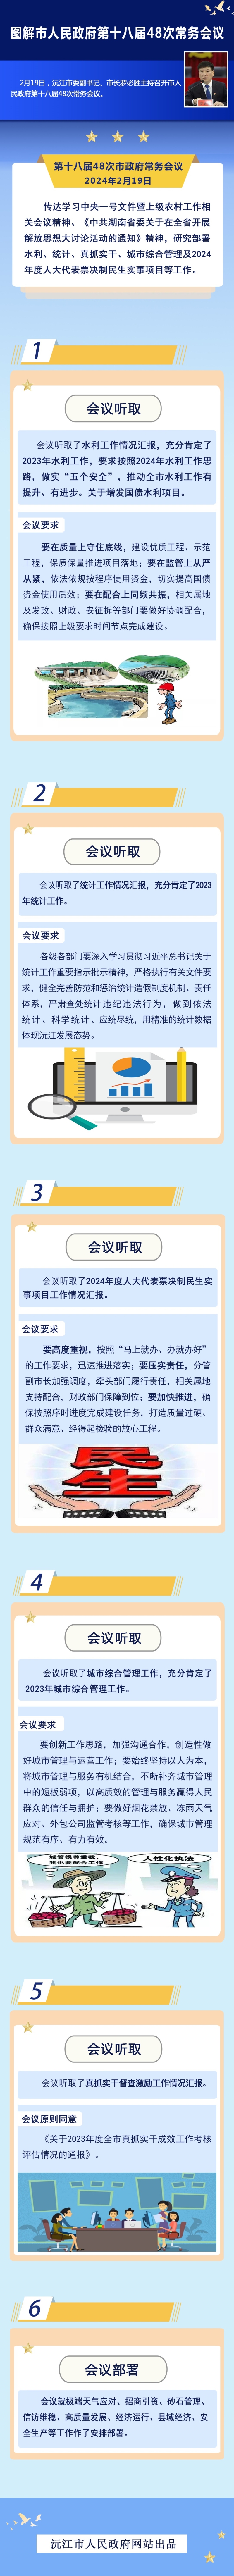 【图解】沅江市人民政府第十八届48次常务会议 